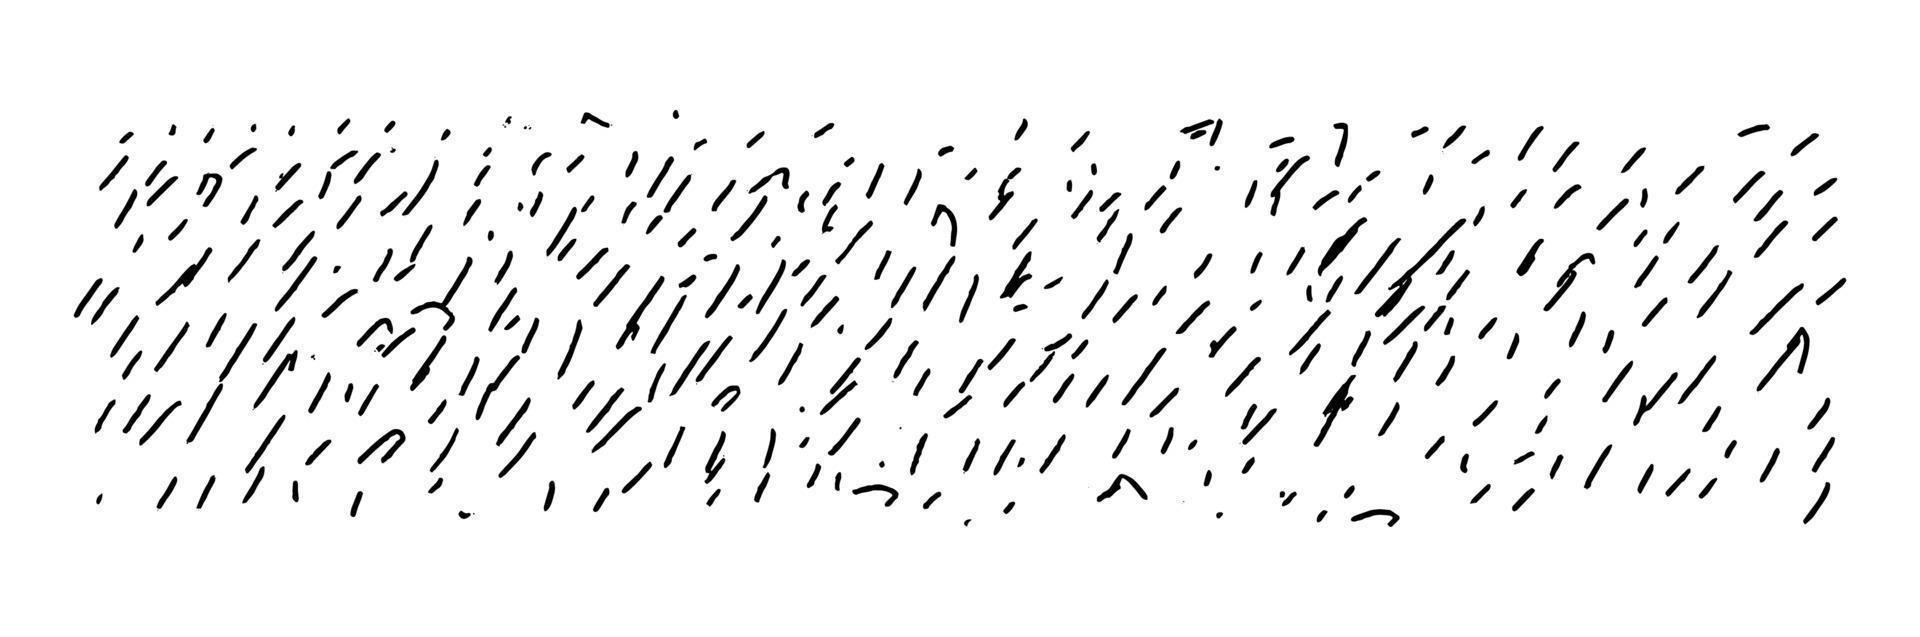 trazos dispersos cortos diagonales dibujados. líneas cortas finas irregulares dibujadas a mano. textura de fondo horizontal aislado en blanco. vector